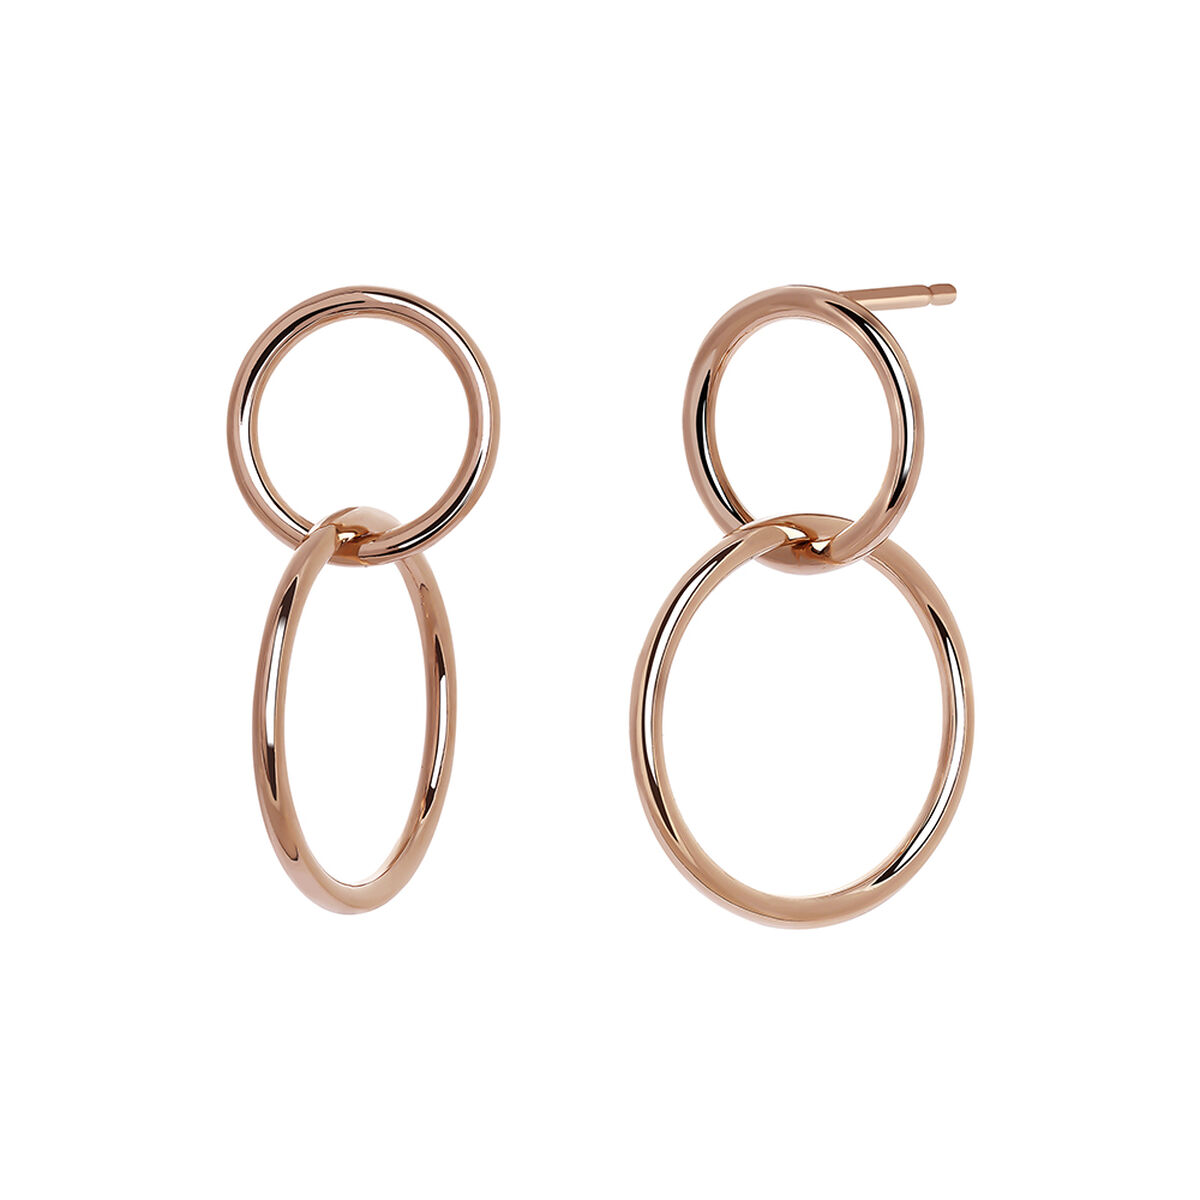 Double medium hoop earrings in 18k rose gold-plated silver , J03587-03, hi-res